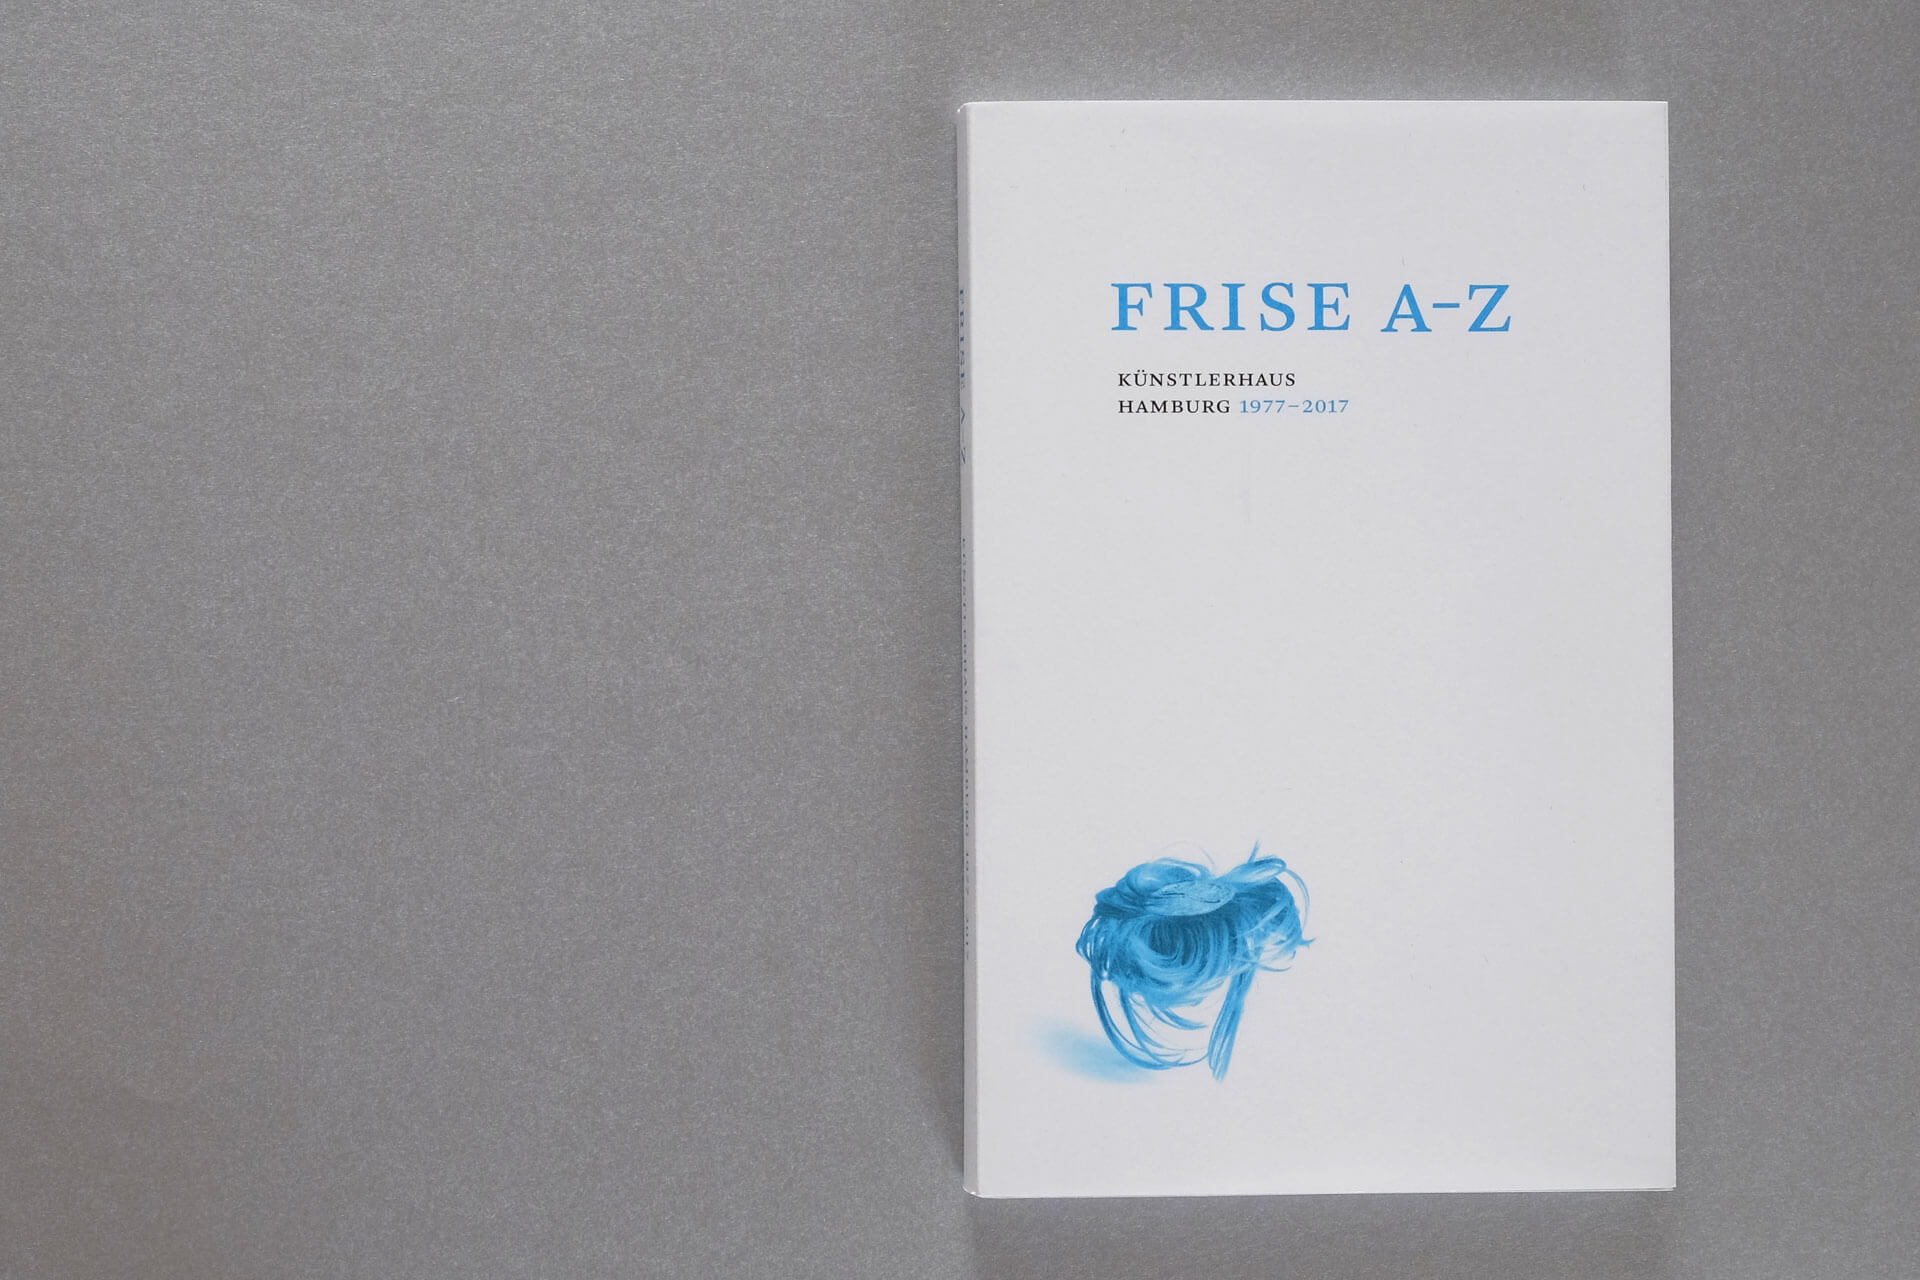 Cover-Motiv der Publikation Frise A–Z. Typografie und Motive in blau (Sonderfarbe) und schwarz